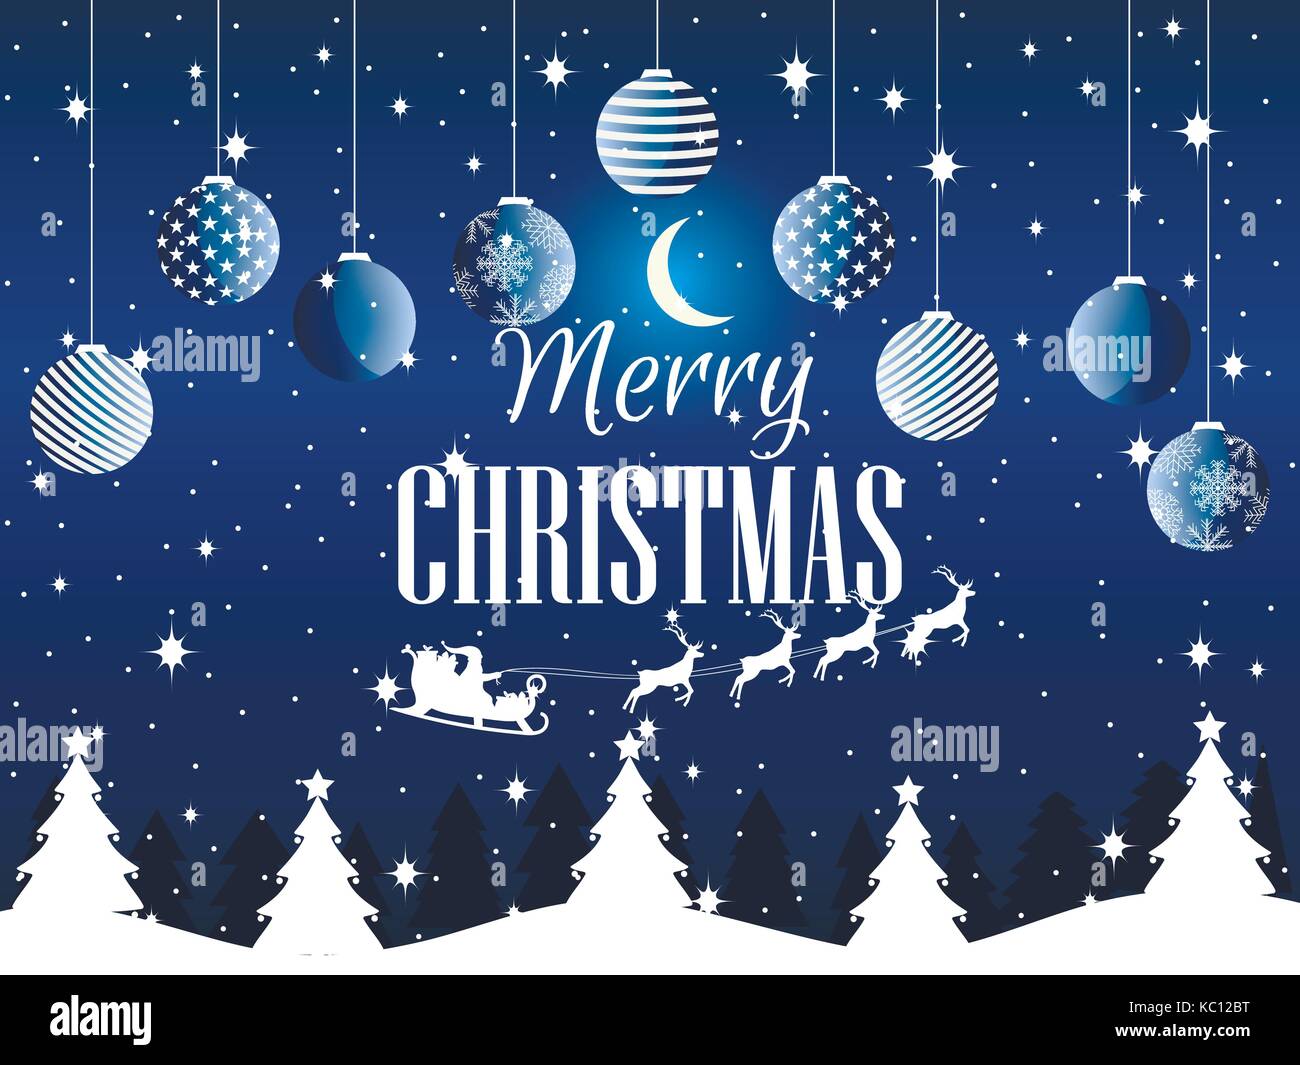 Buon Natale Paesaggi.Buon Natale Paesaggio Invernale Con I Fiocchi Di Neve E Alberi Di Natale Xmas Sfondo Illustrazione Vettoriale Immagine E Vettoriale Alamy